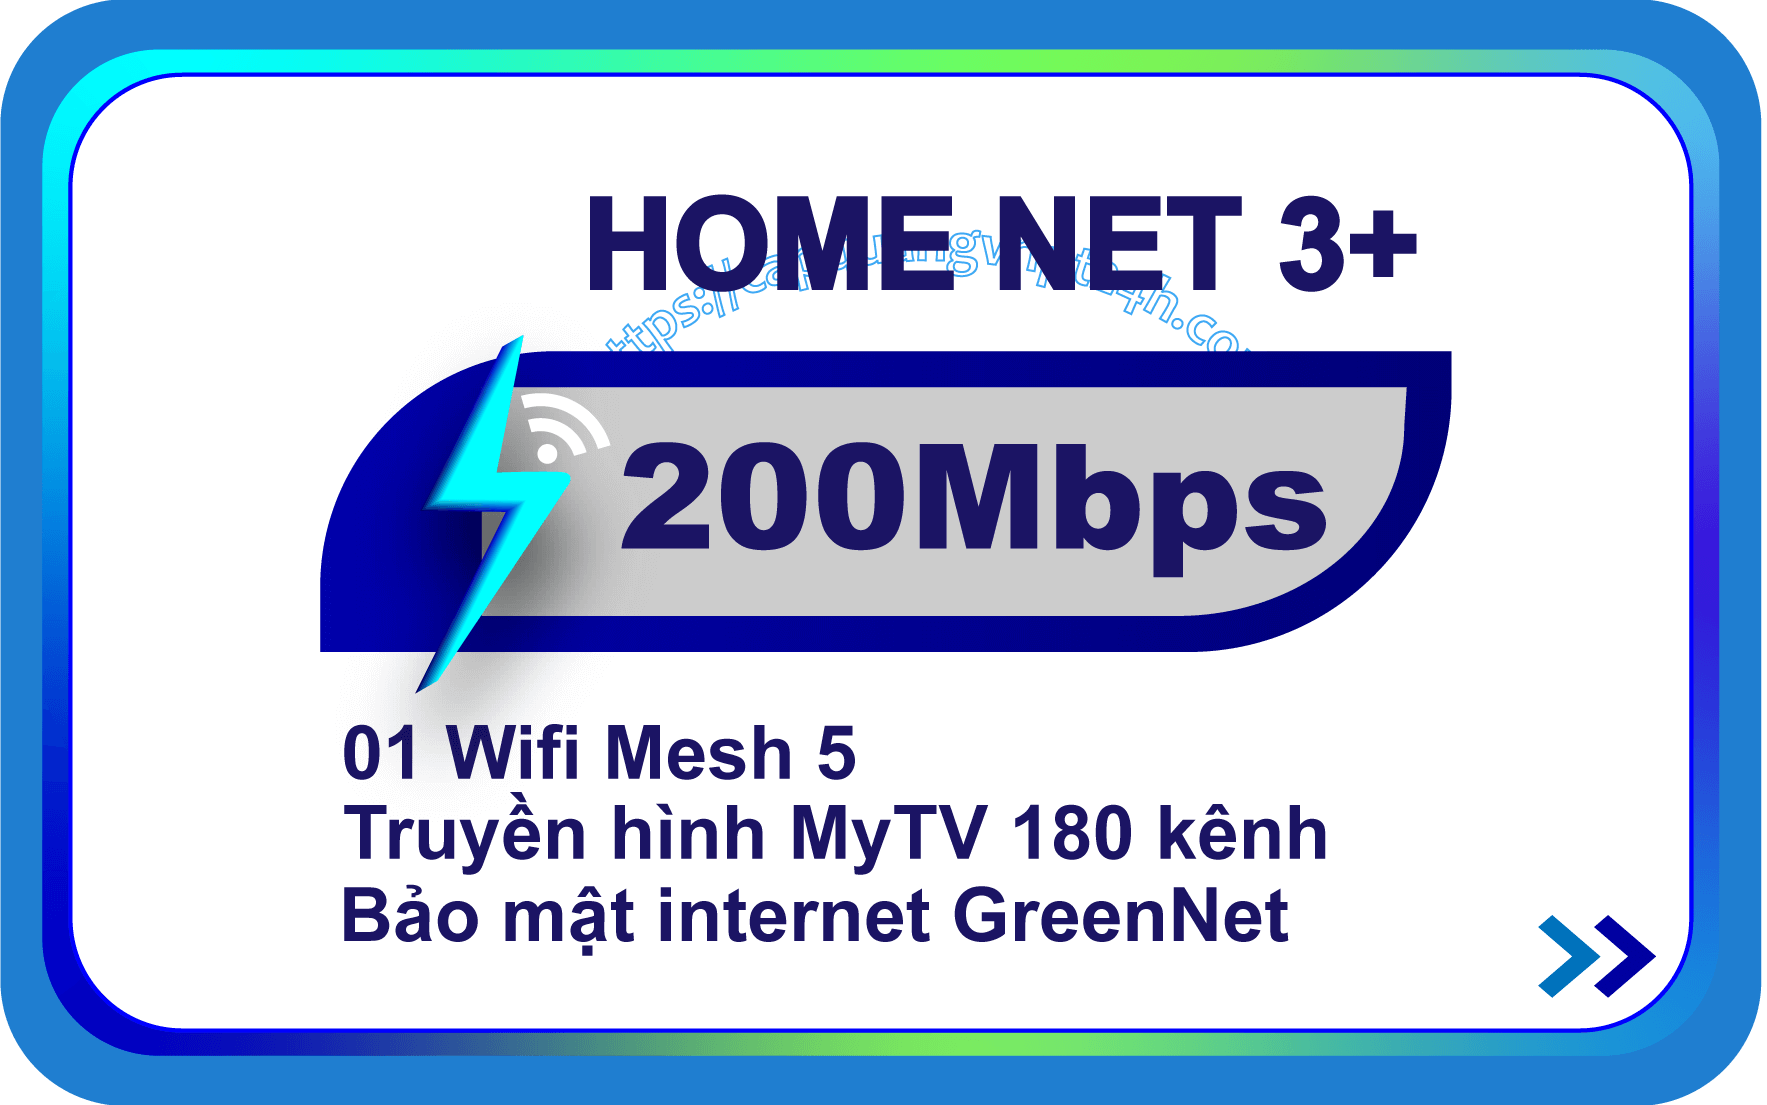 Internet Home Net 3+